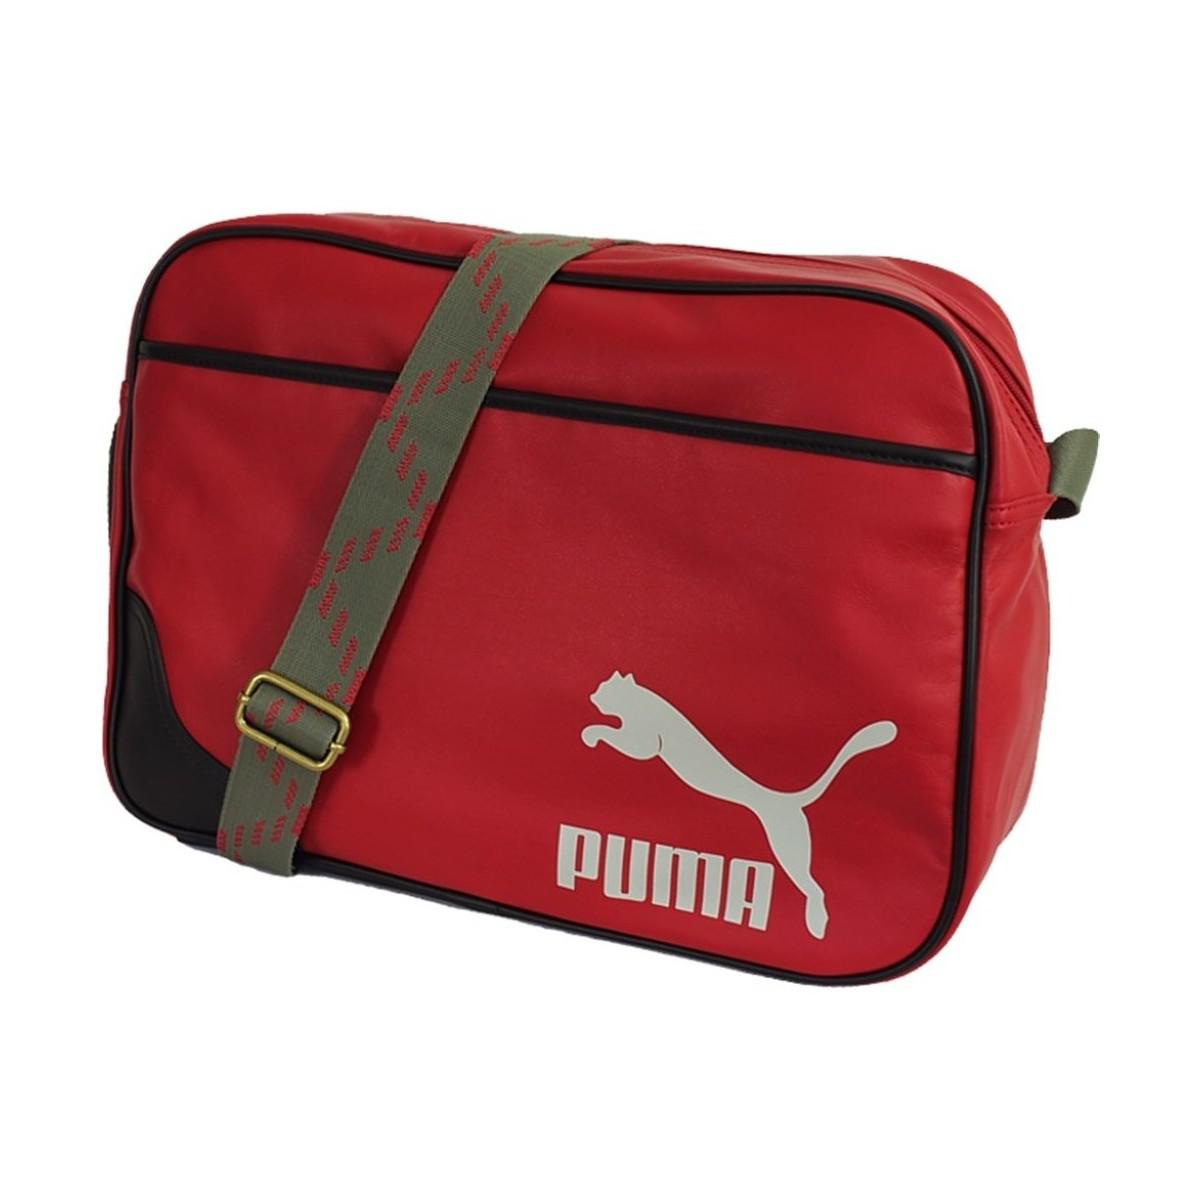 puma bags for mens